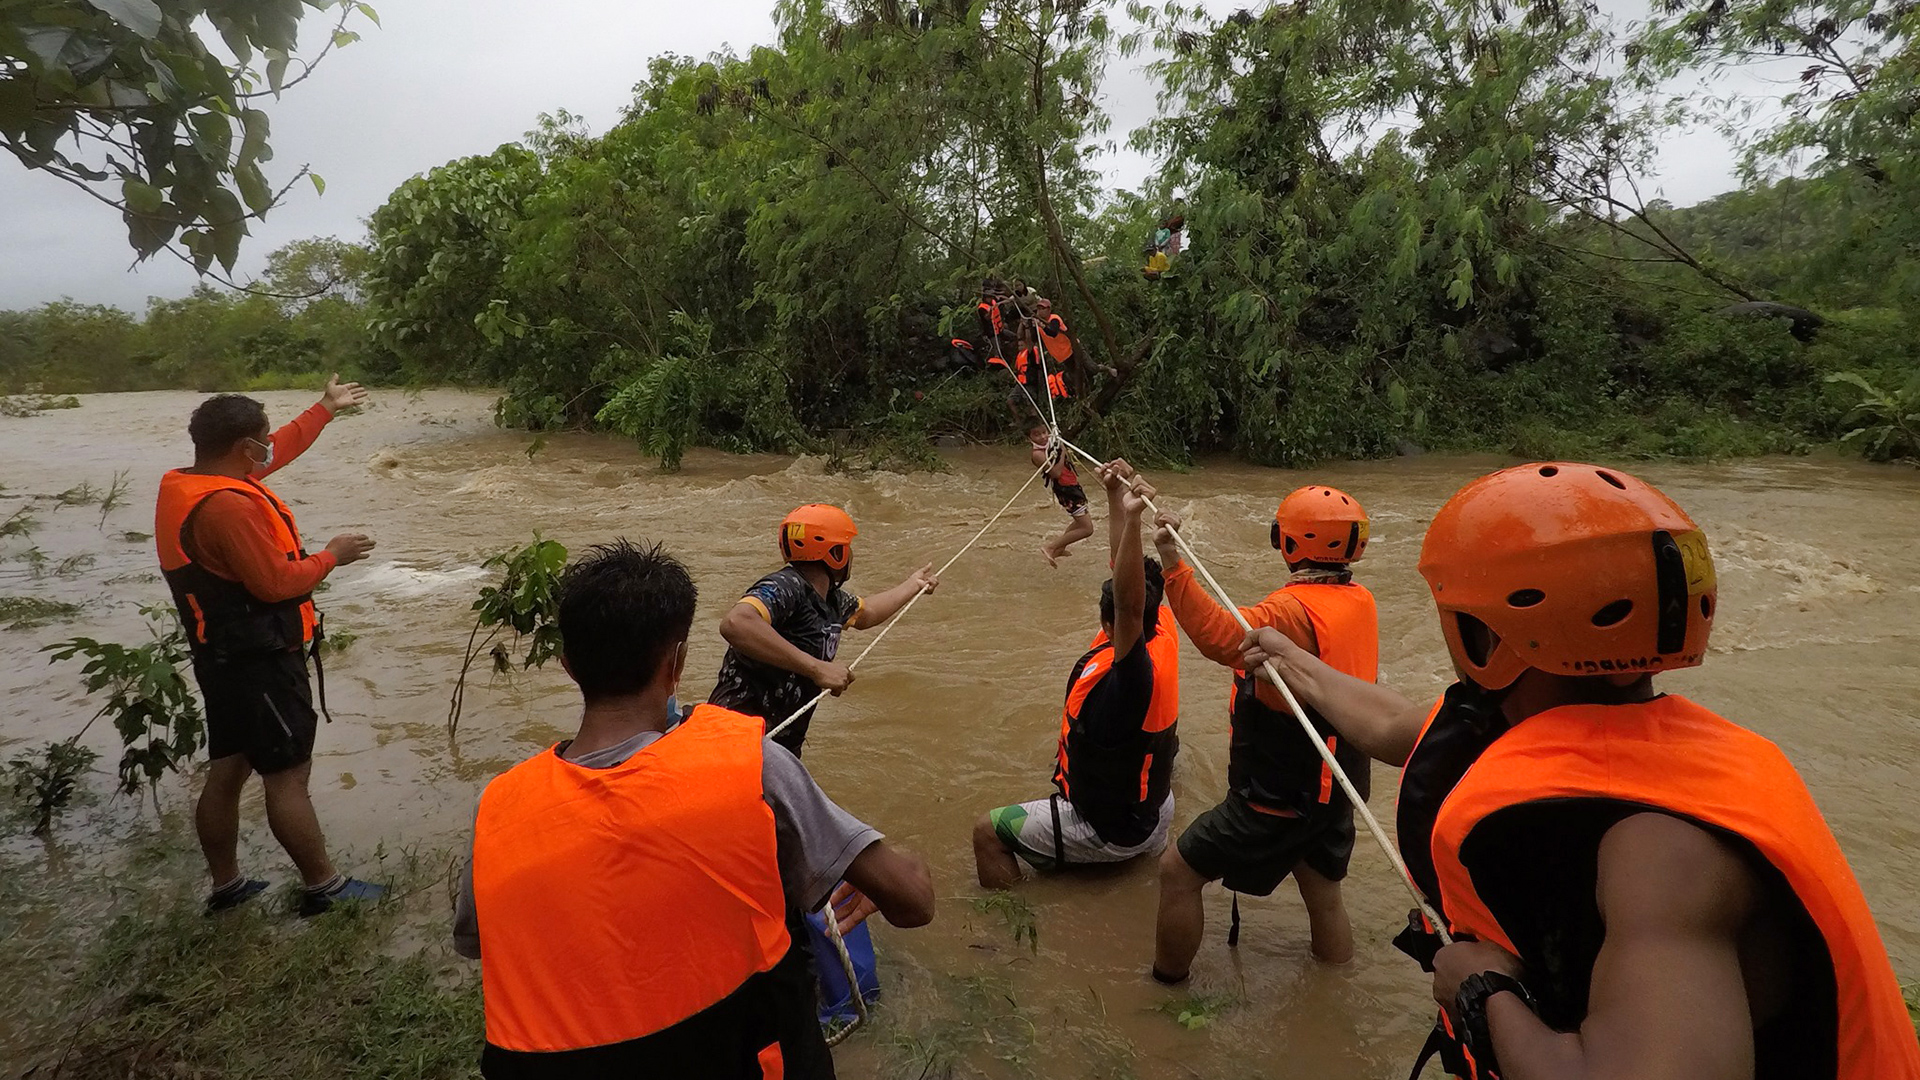 Rettungskräfte hangeln sich mit einem Seil auf das überliegende Ufer in einem überfluteten Dorf in der Stadt Gonzaga, Philippinen, 12. Oktober 2021. | EPA